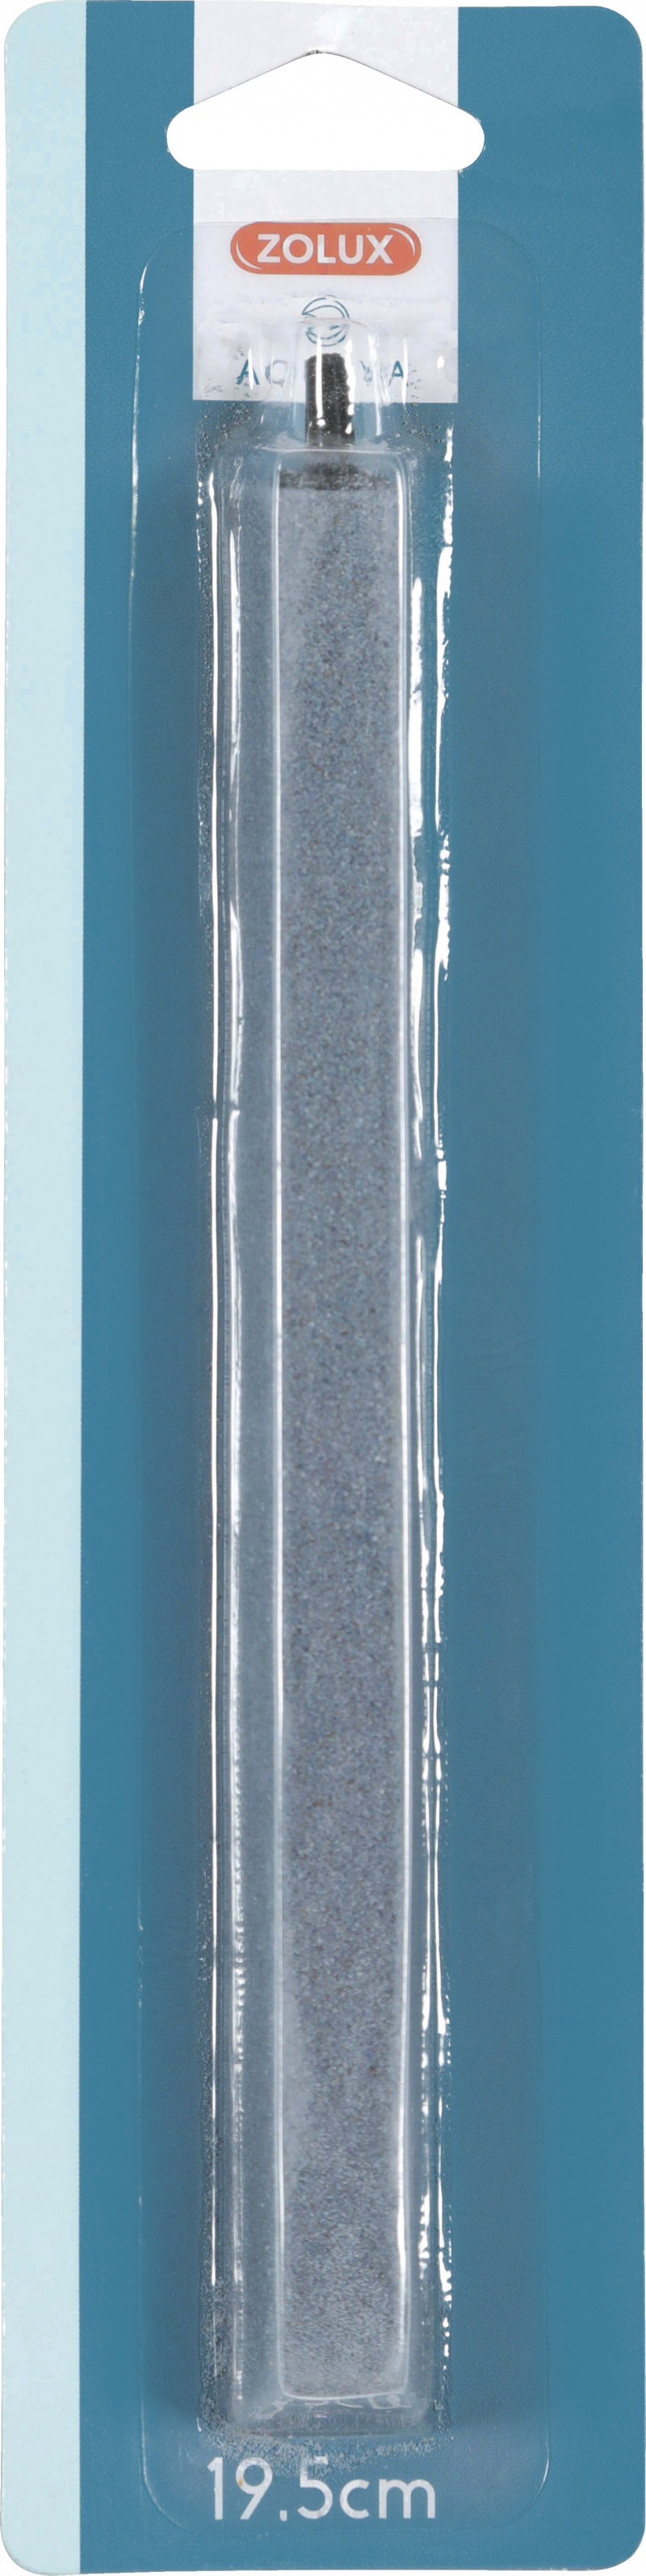 Piedra difusora de aire Nanolife Zolux - barra 19,5 cm